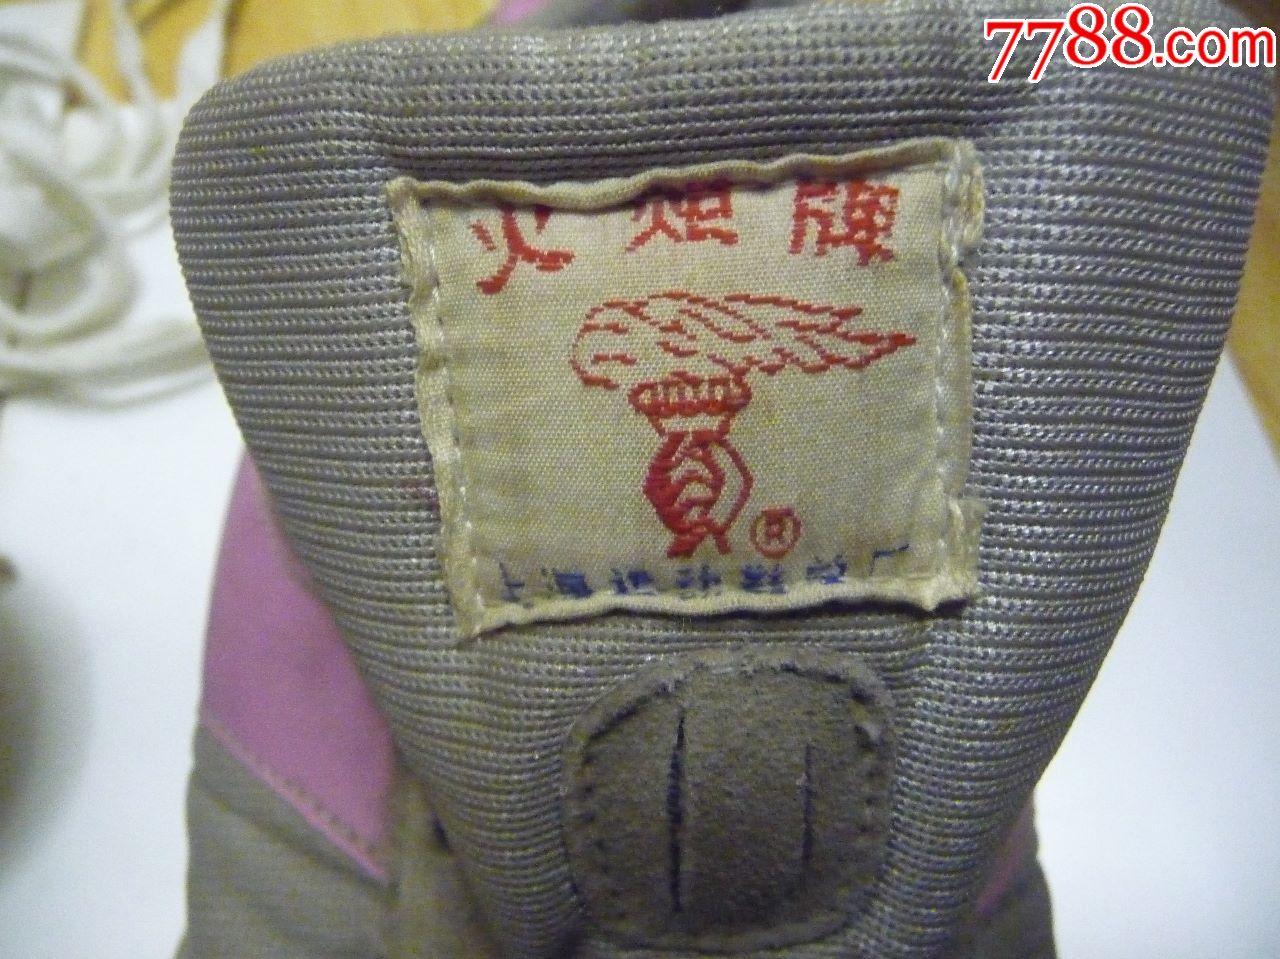 古董运动鞋收藏上世纪八九十年代的火炬牌钉子鞋41码无工具未穿库存货